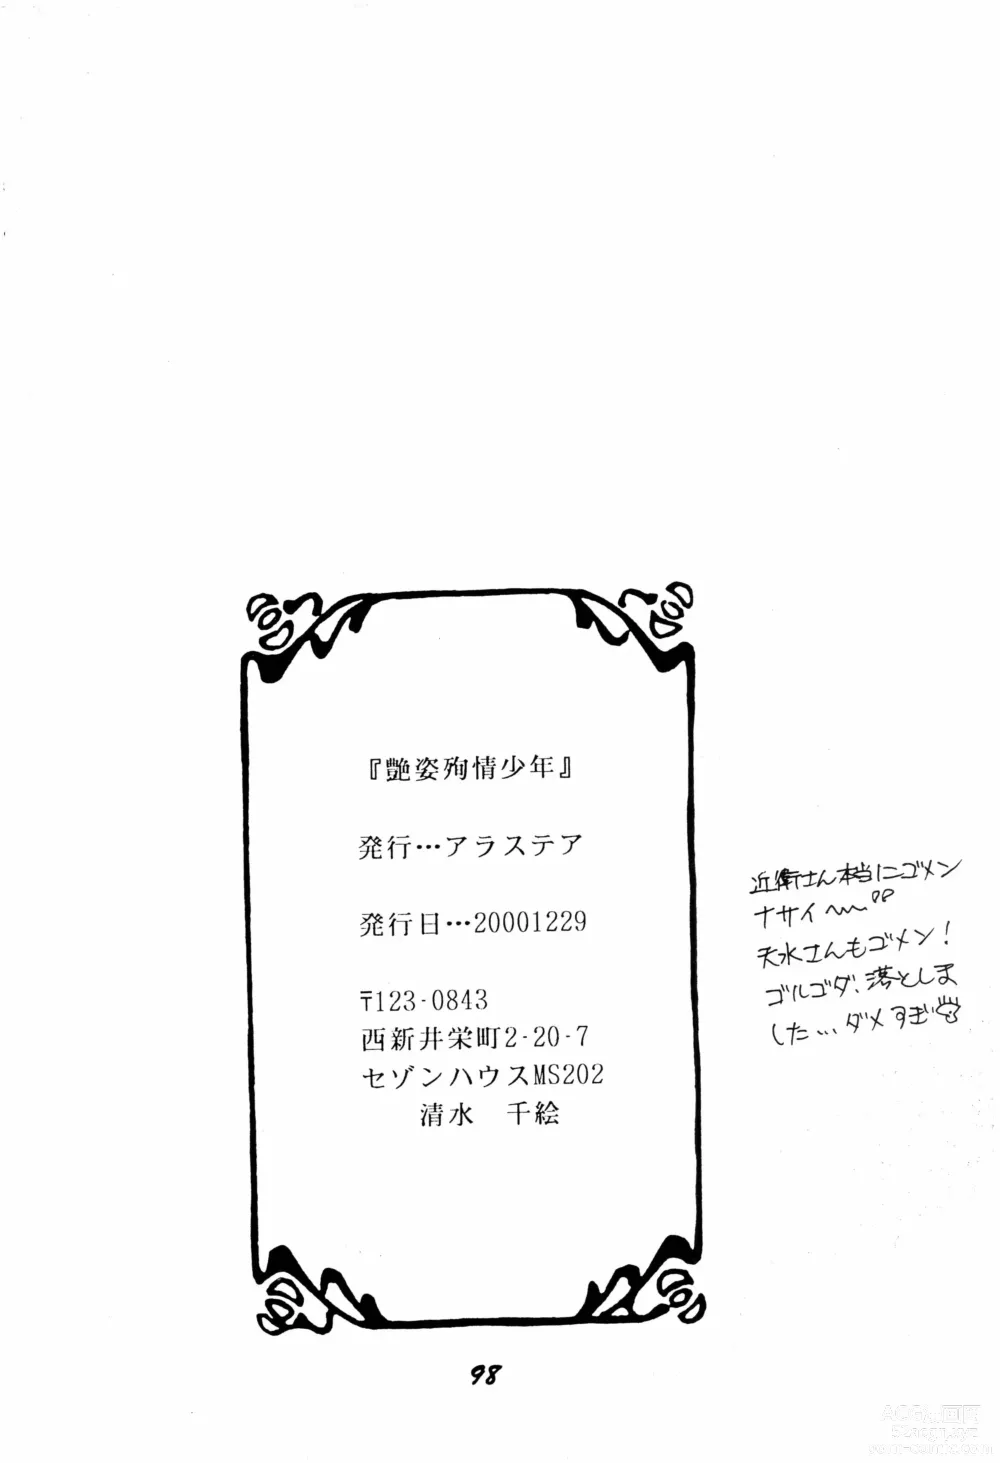 Page 97 of doujinshi Enshi Junjou Shounen